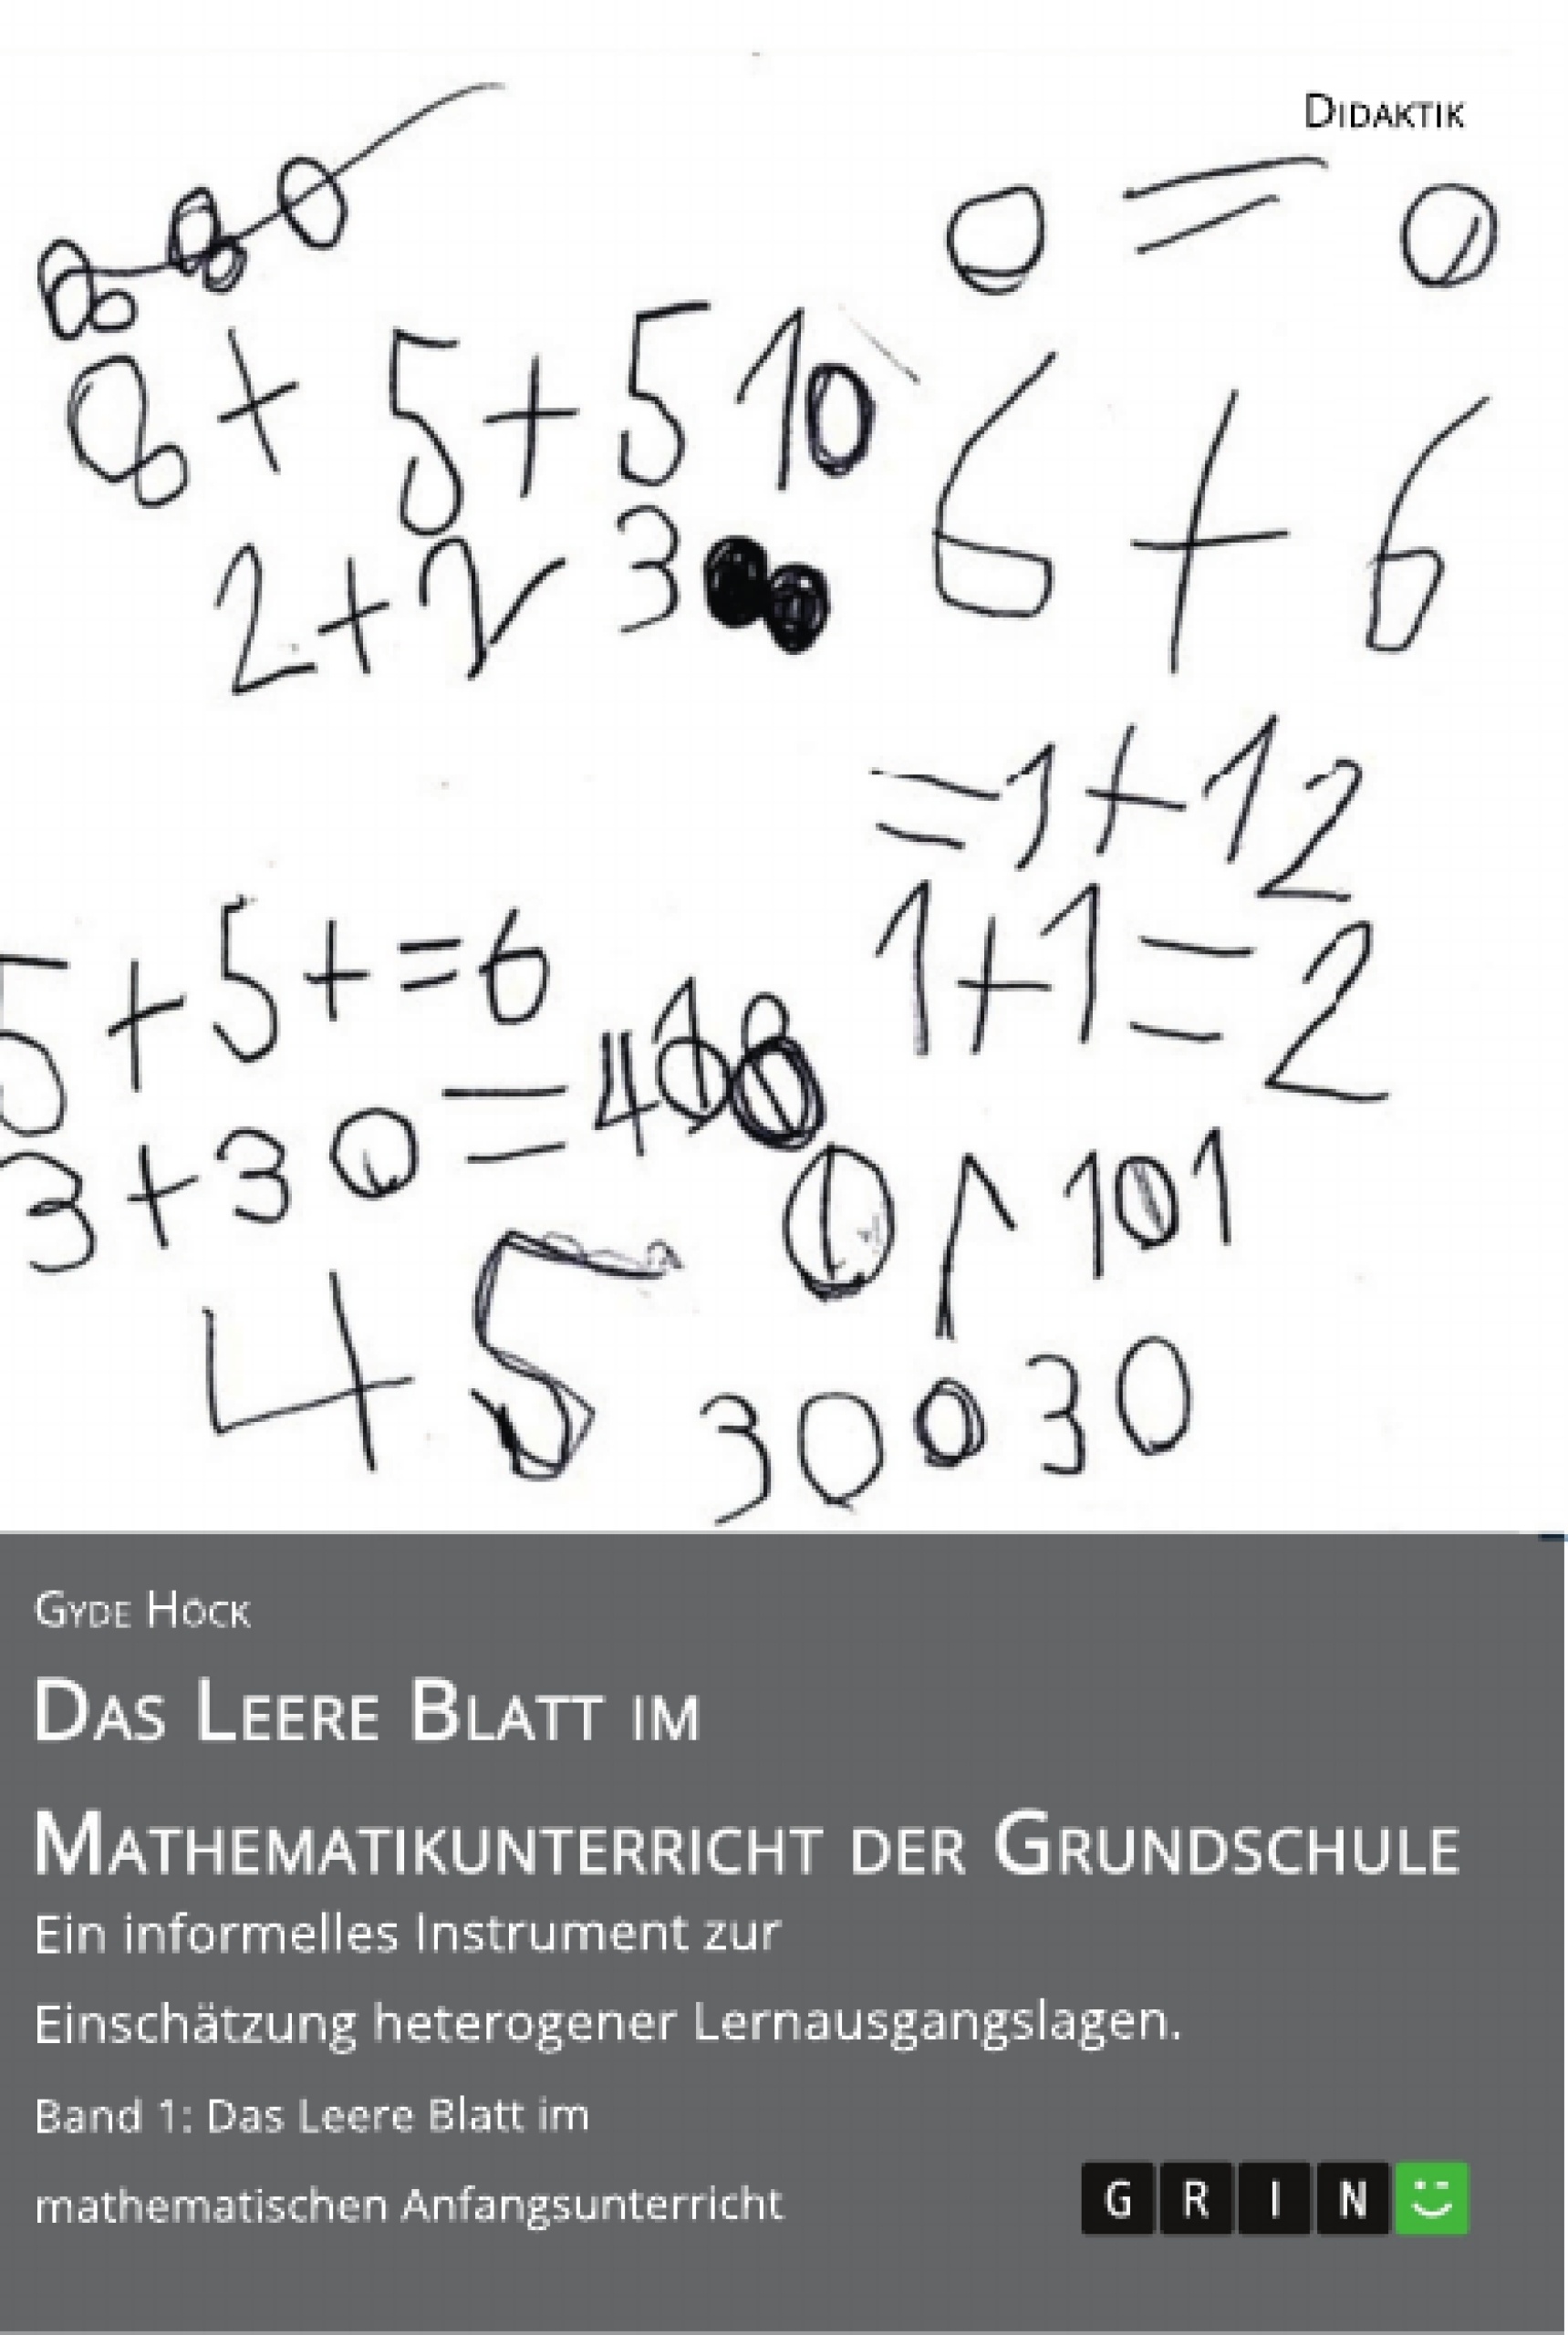 Titel: Das Leere Blatt im Mathematikunterricht der Grundschule